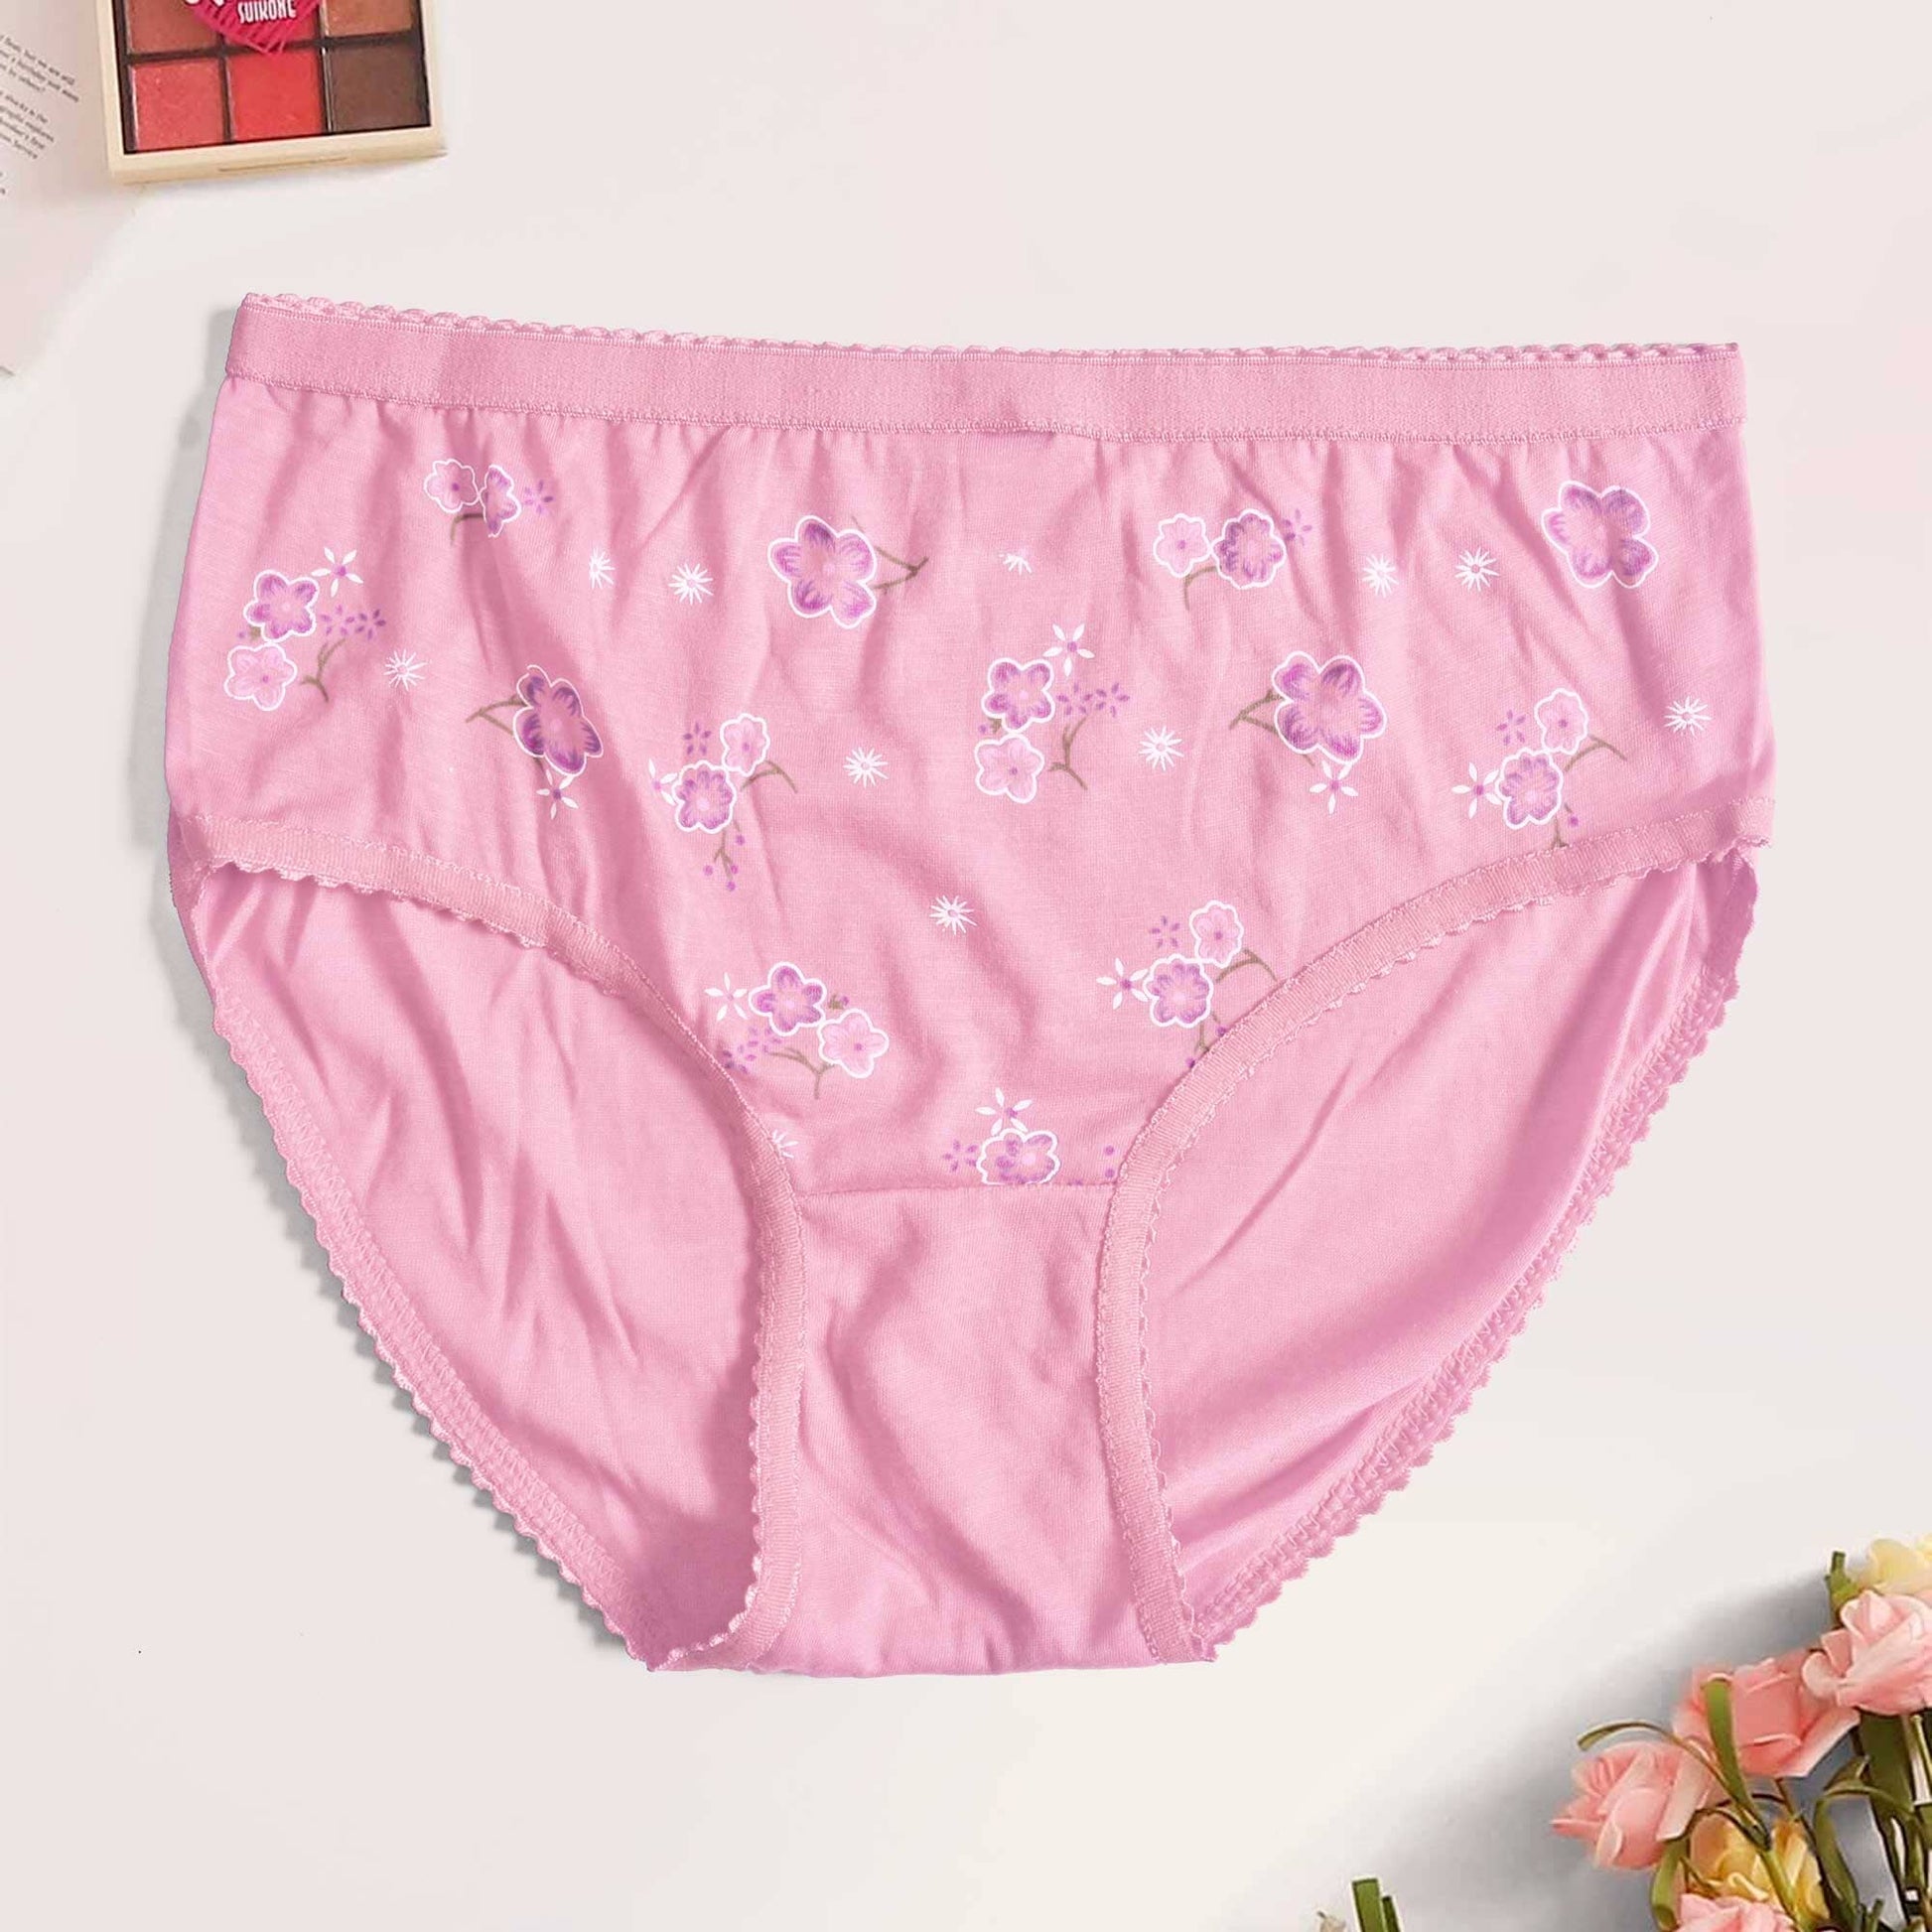 Women's Brighton Floral Printed Underwear Women's Lingerie SRL Pink D1 Waist 30-34